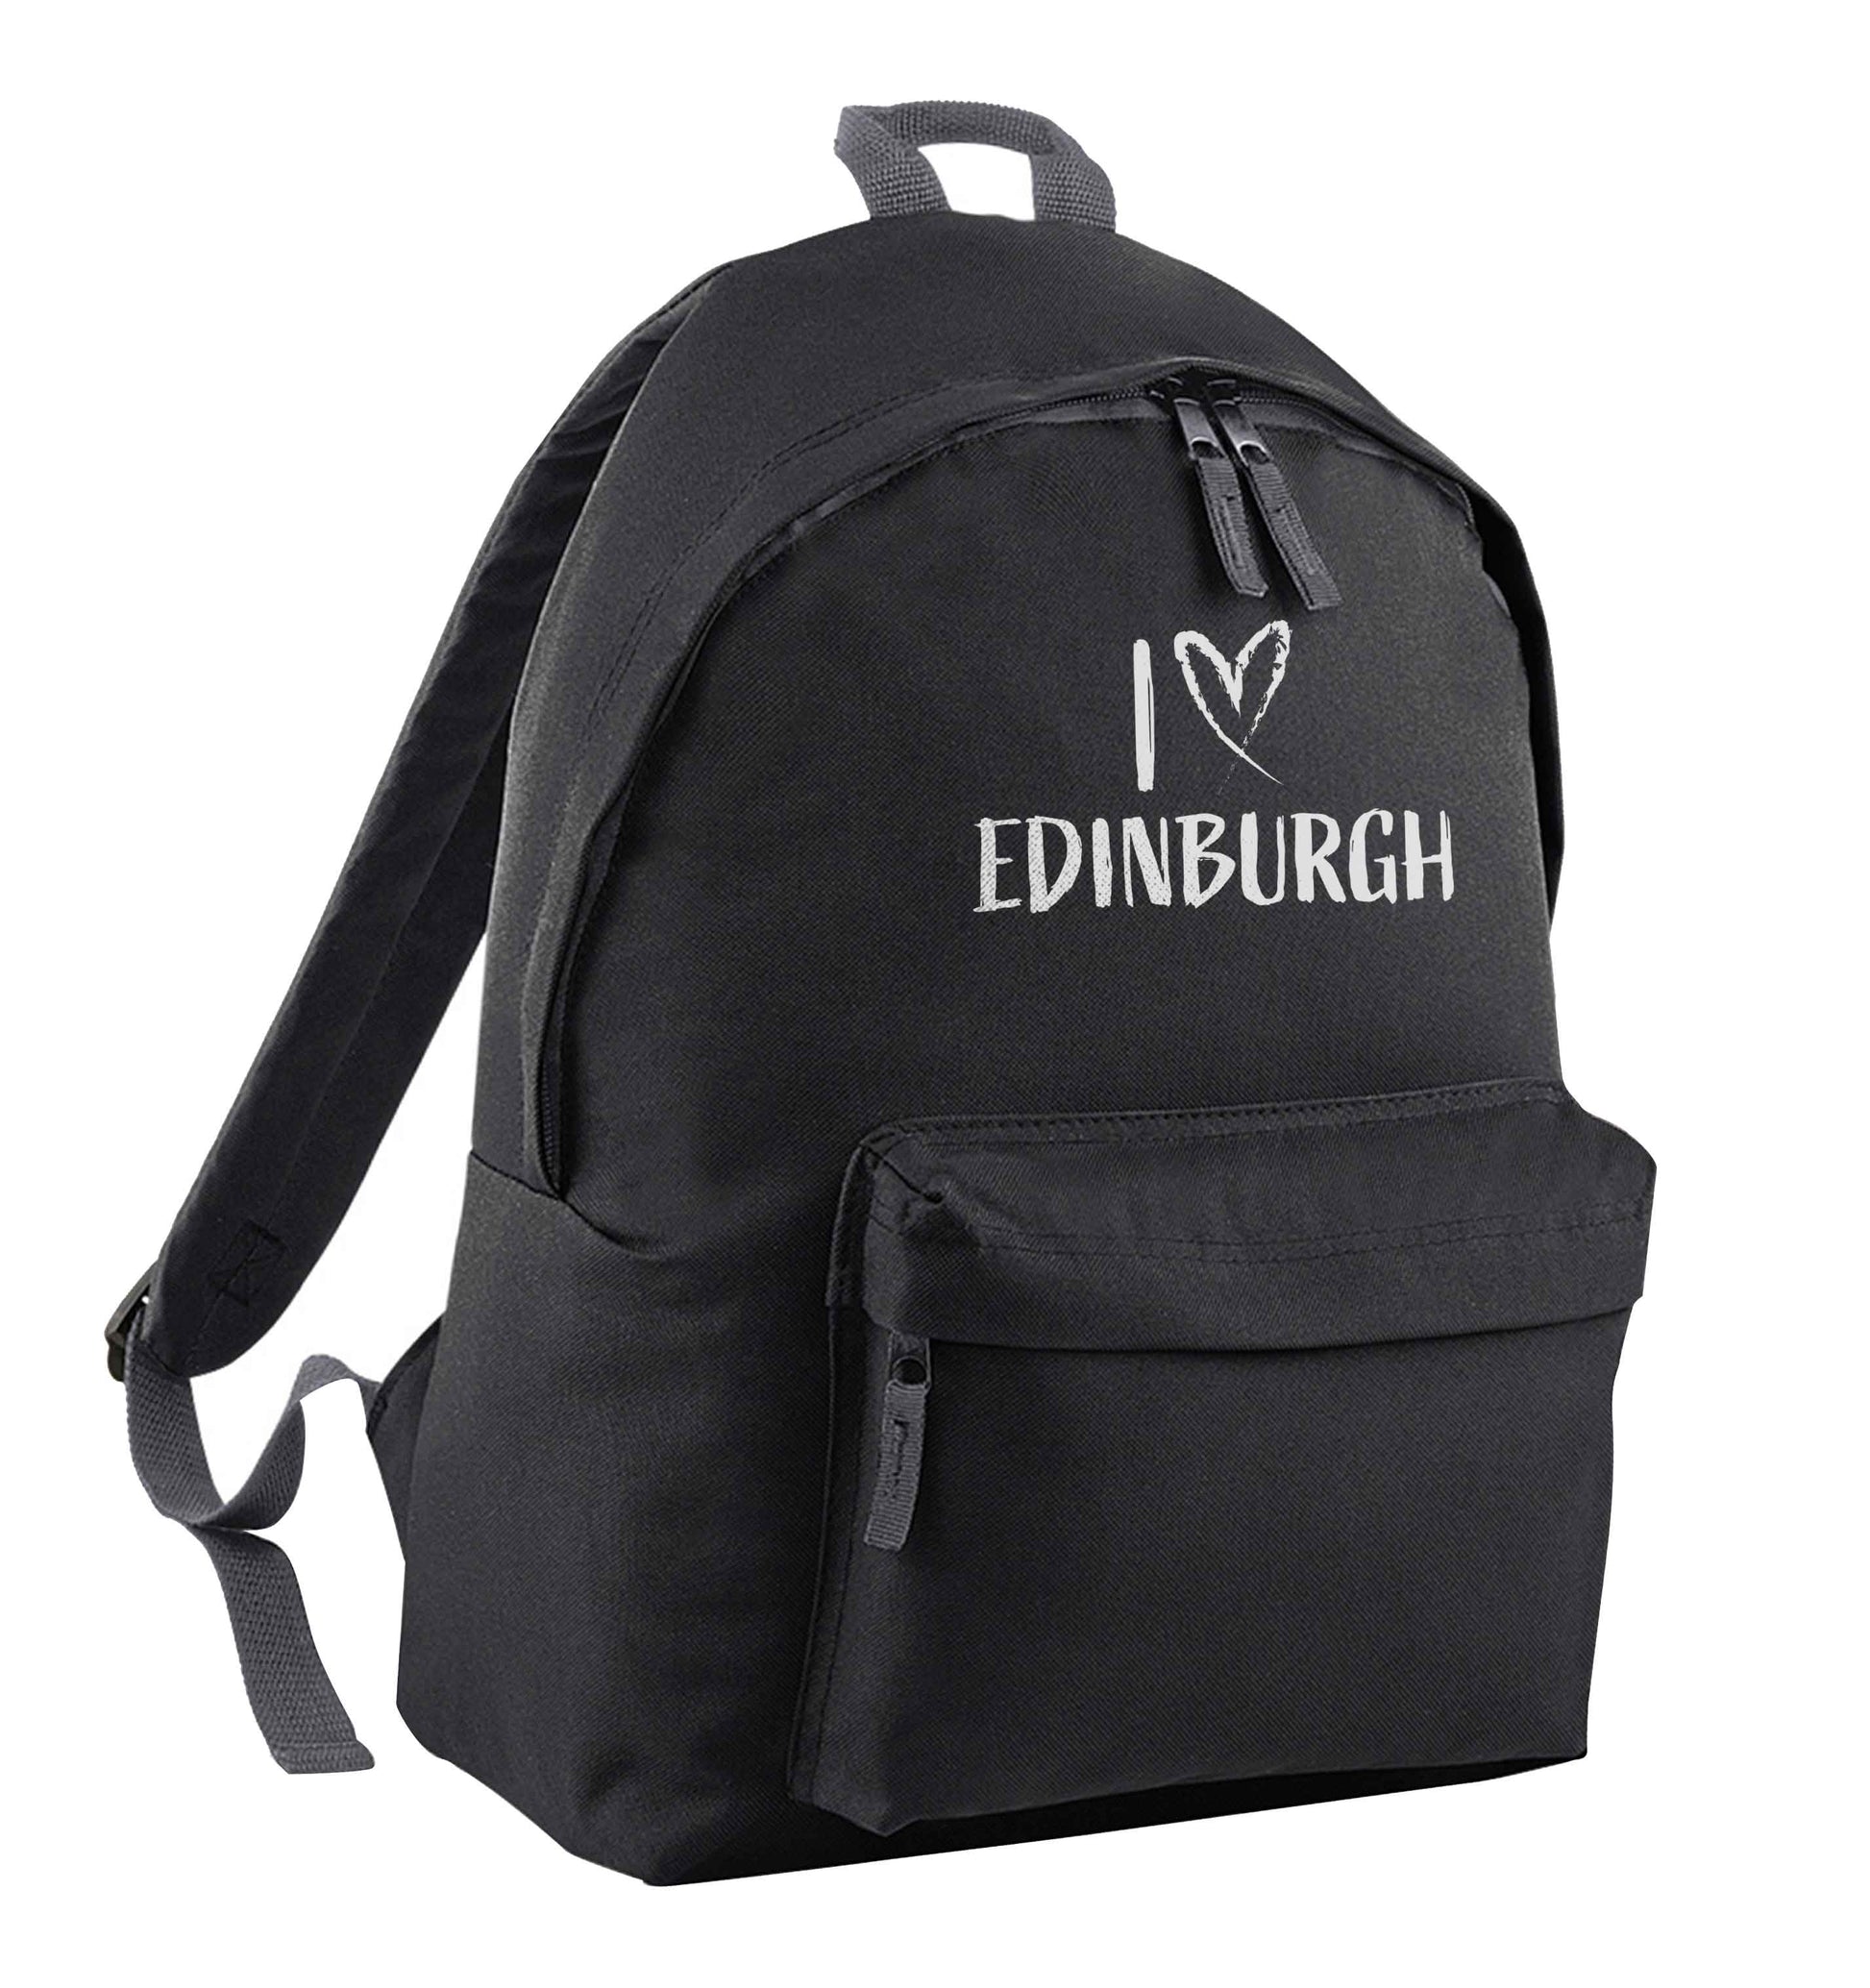 I love Edinburgh black adults backpack